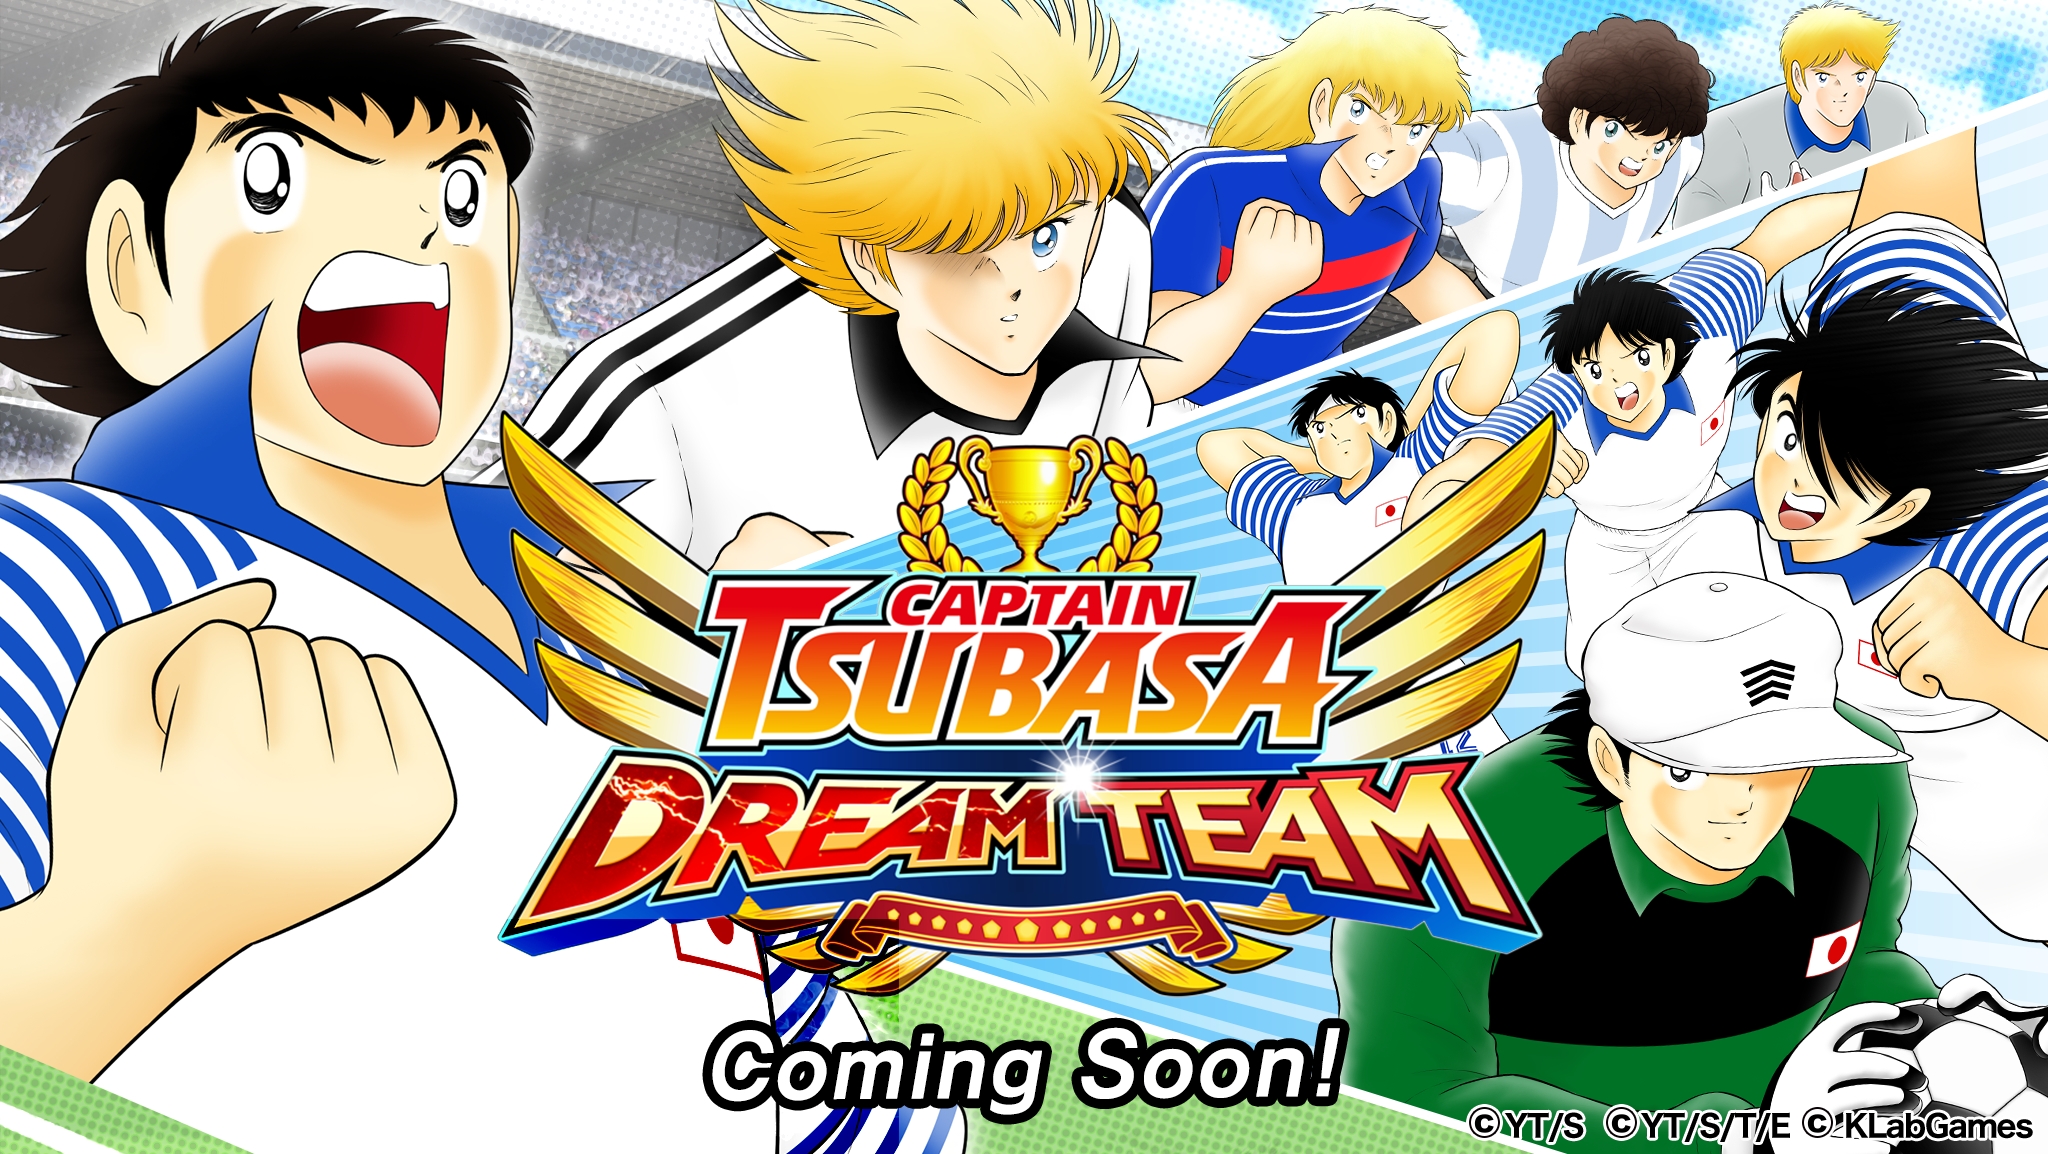 キャプテン翼 たたかえドリームチーム のグローバル版 Captain Tsubasa Dream Team が事前登録受付を開始 Klab株式会社のプレスリリース